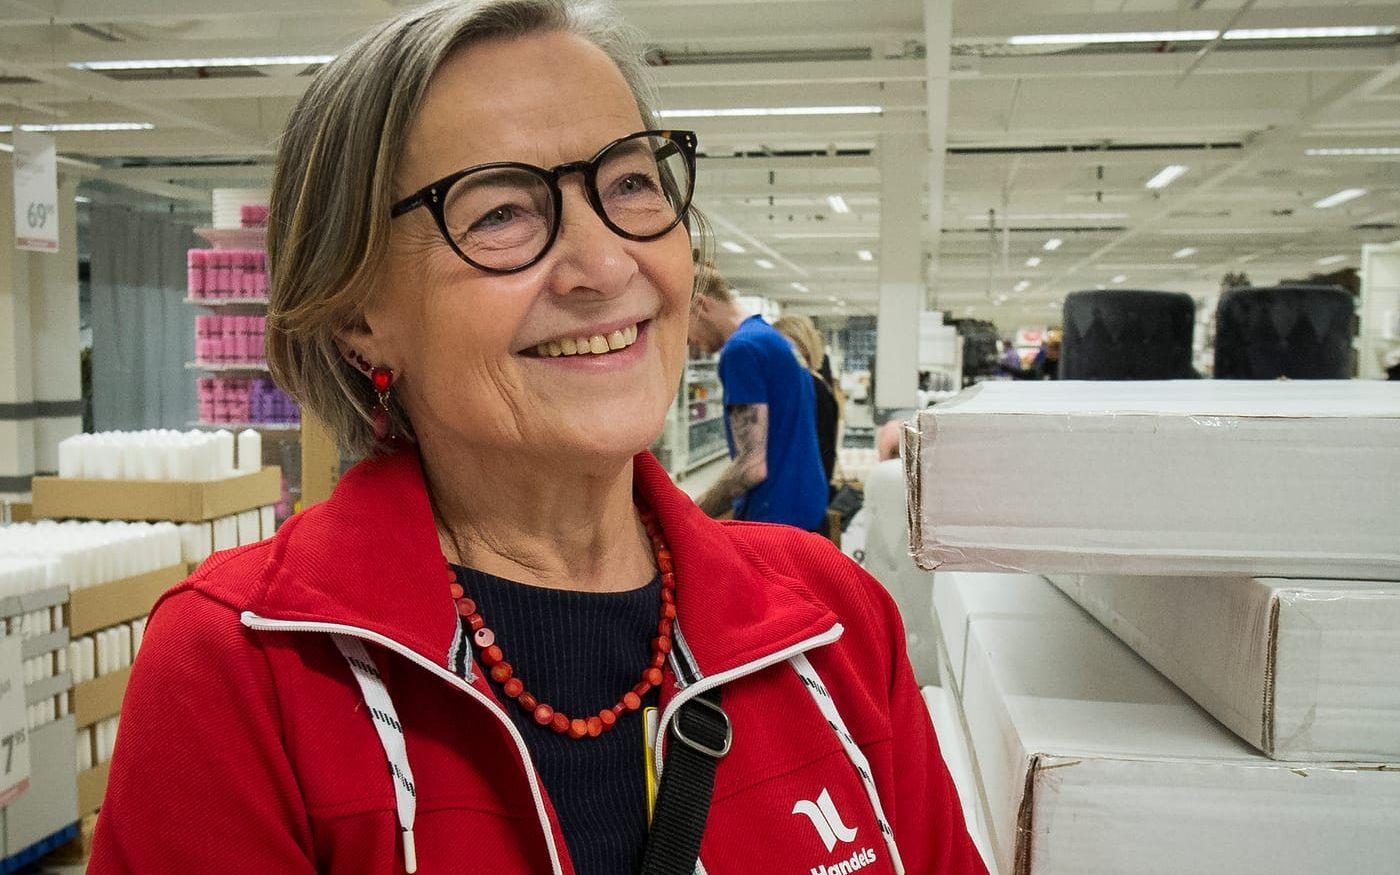 Izabela Nanneson har arbetat på Gekås sedan 1991. Izabela blev fackligt engagerad 2003 och är idag ordförande för Handelsklubben på Gekås.